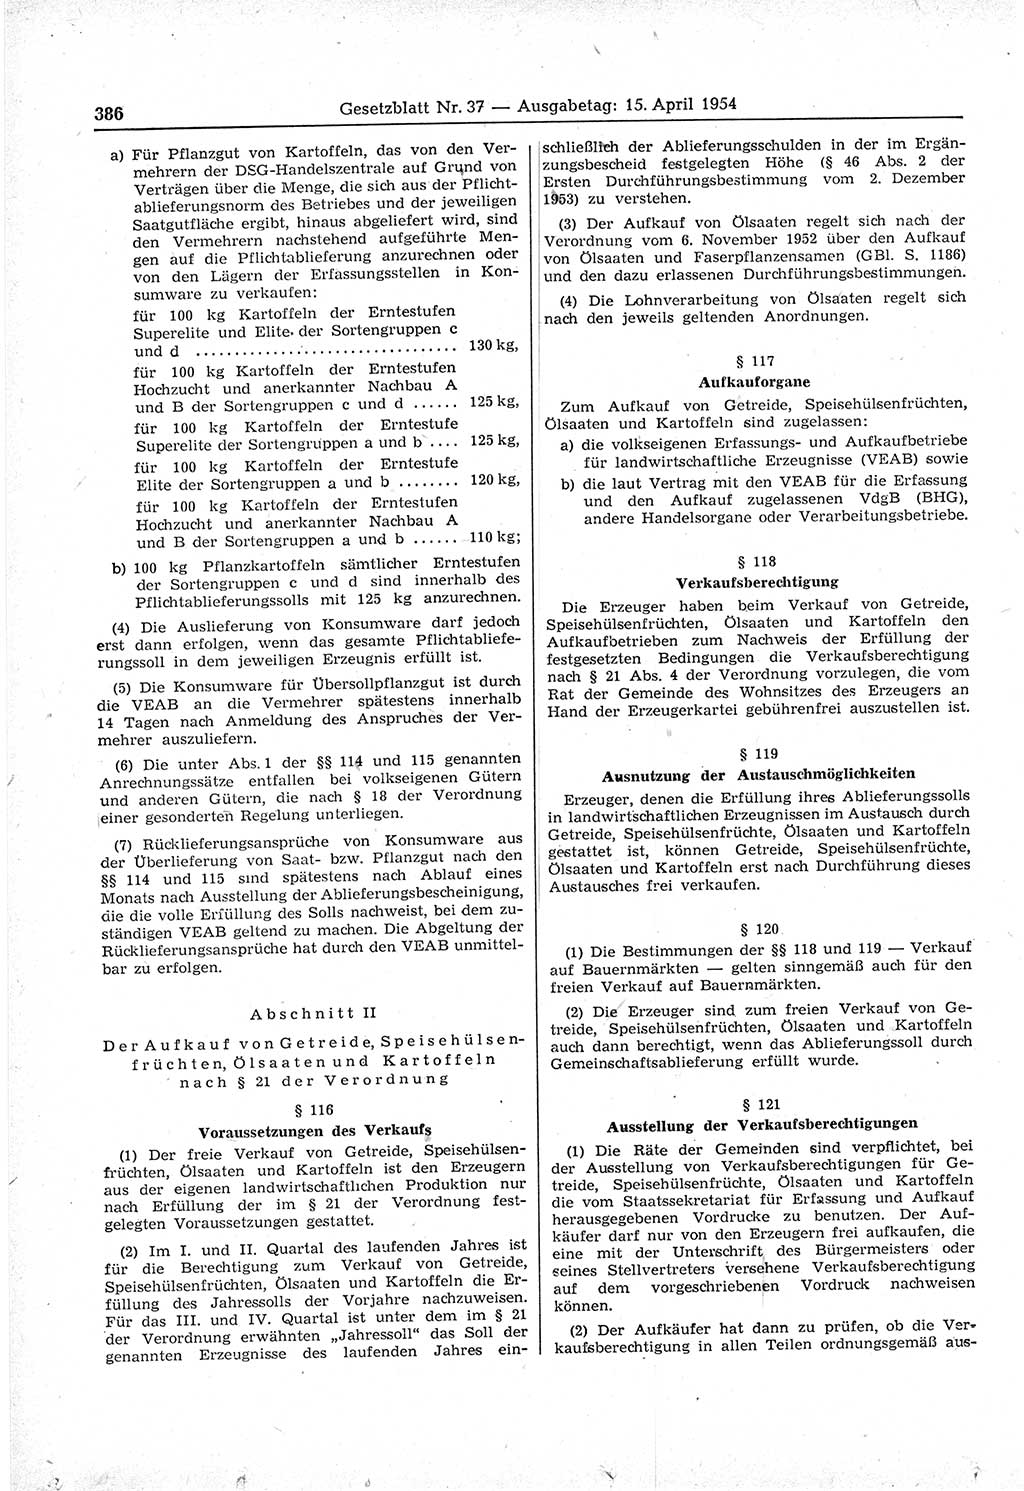 Gesetzblatt (GBl.) der Deutschen Demokratischen Republik (DDR) 1954, Seite 386 (GBl. DDR 1954, S. 386)